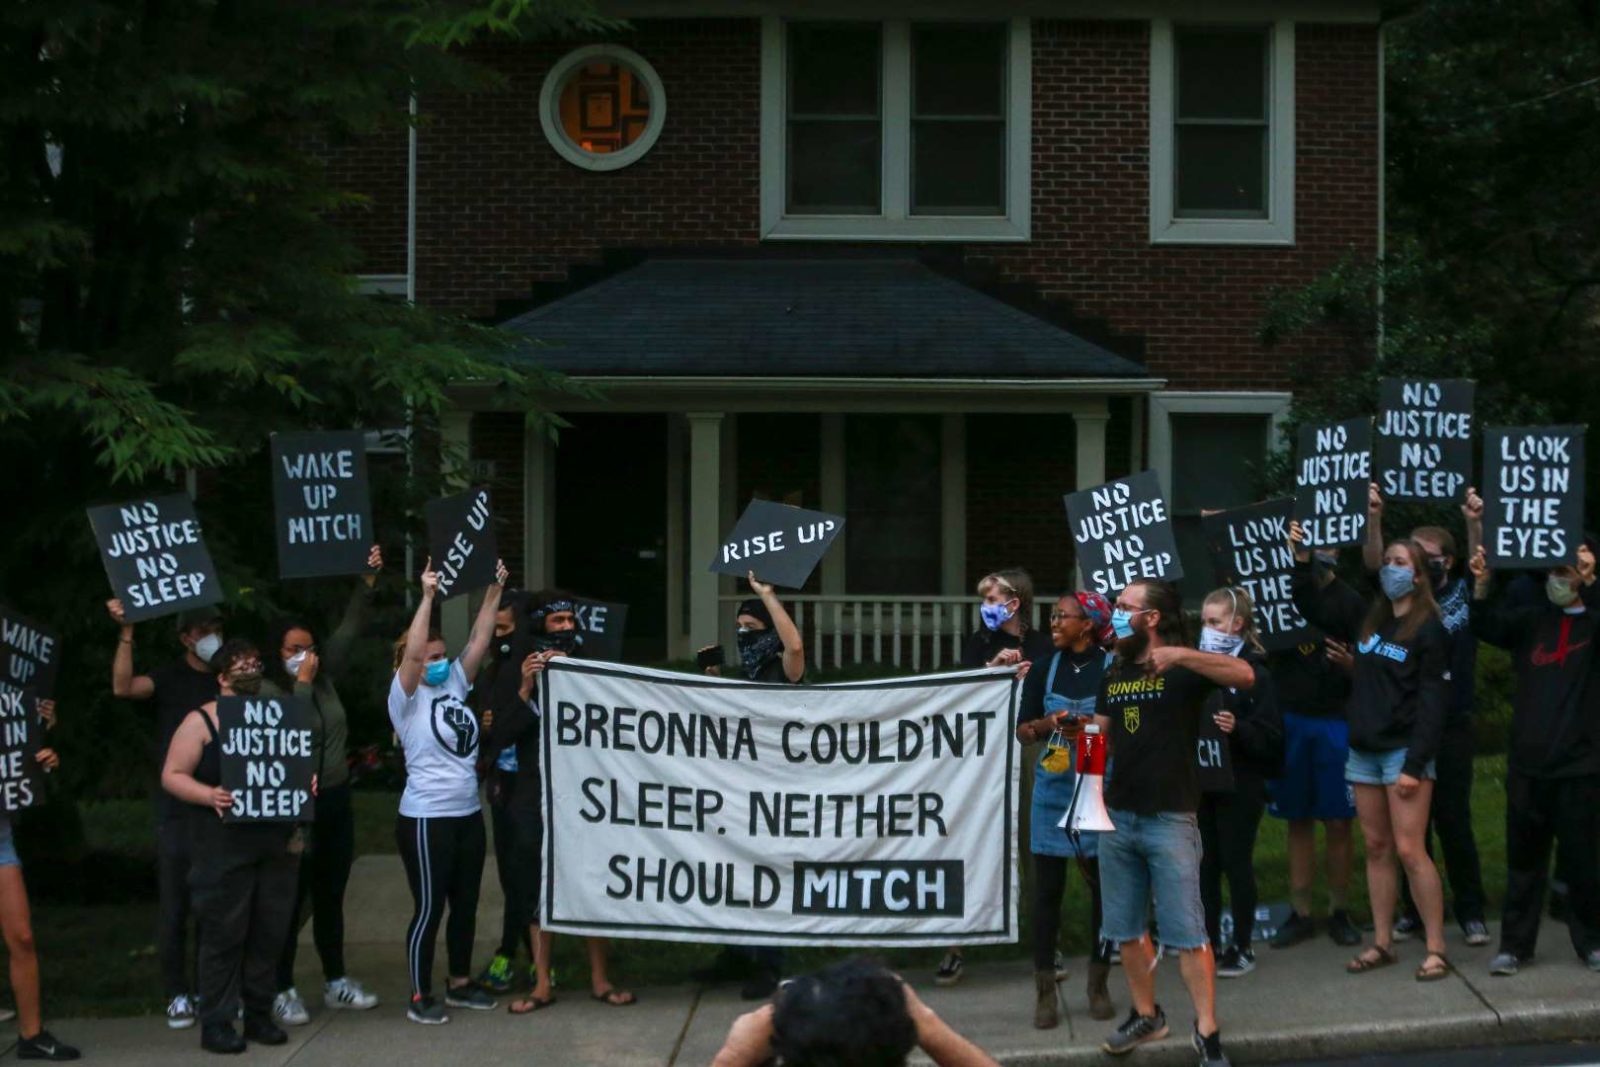 Los activistas de Sunrise se manifiestan frente a la casa de KY de Mitch McConnell, con un gran cartel que dice "Breonna no podía dormir. Tampoco debería Mitch".